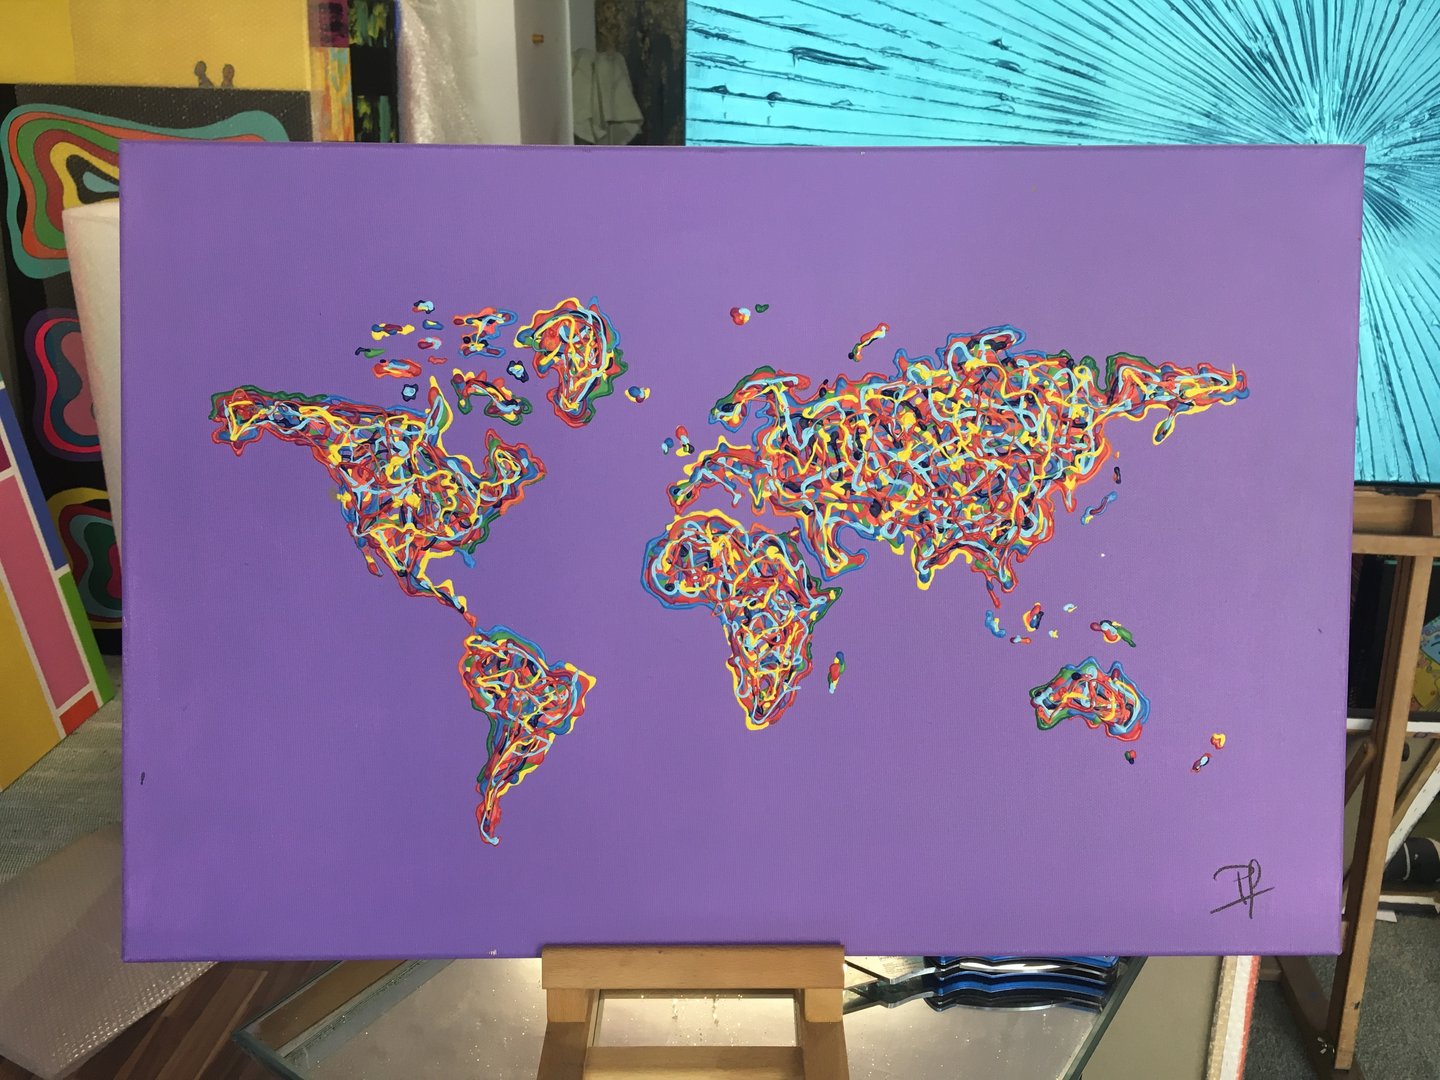 60x40cm Weltkarte Acryl auf Leinwand lila